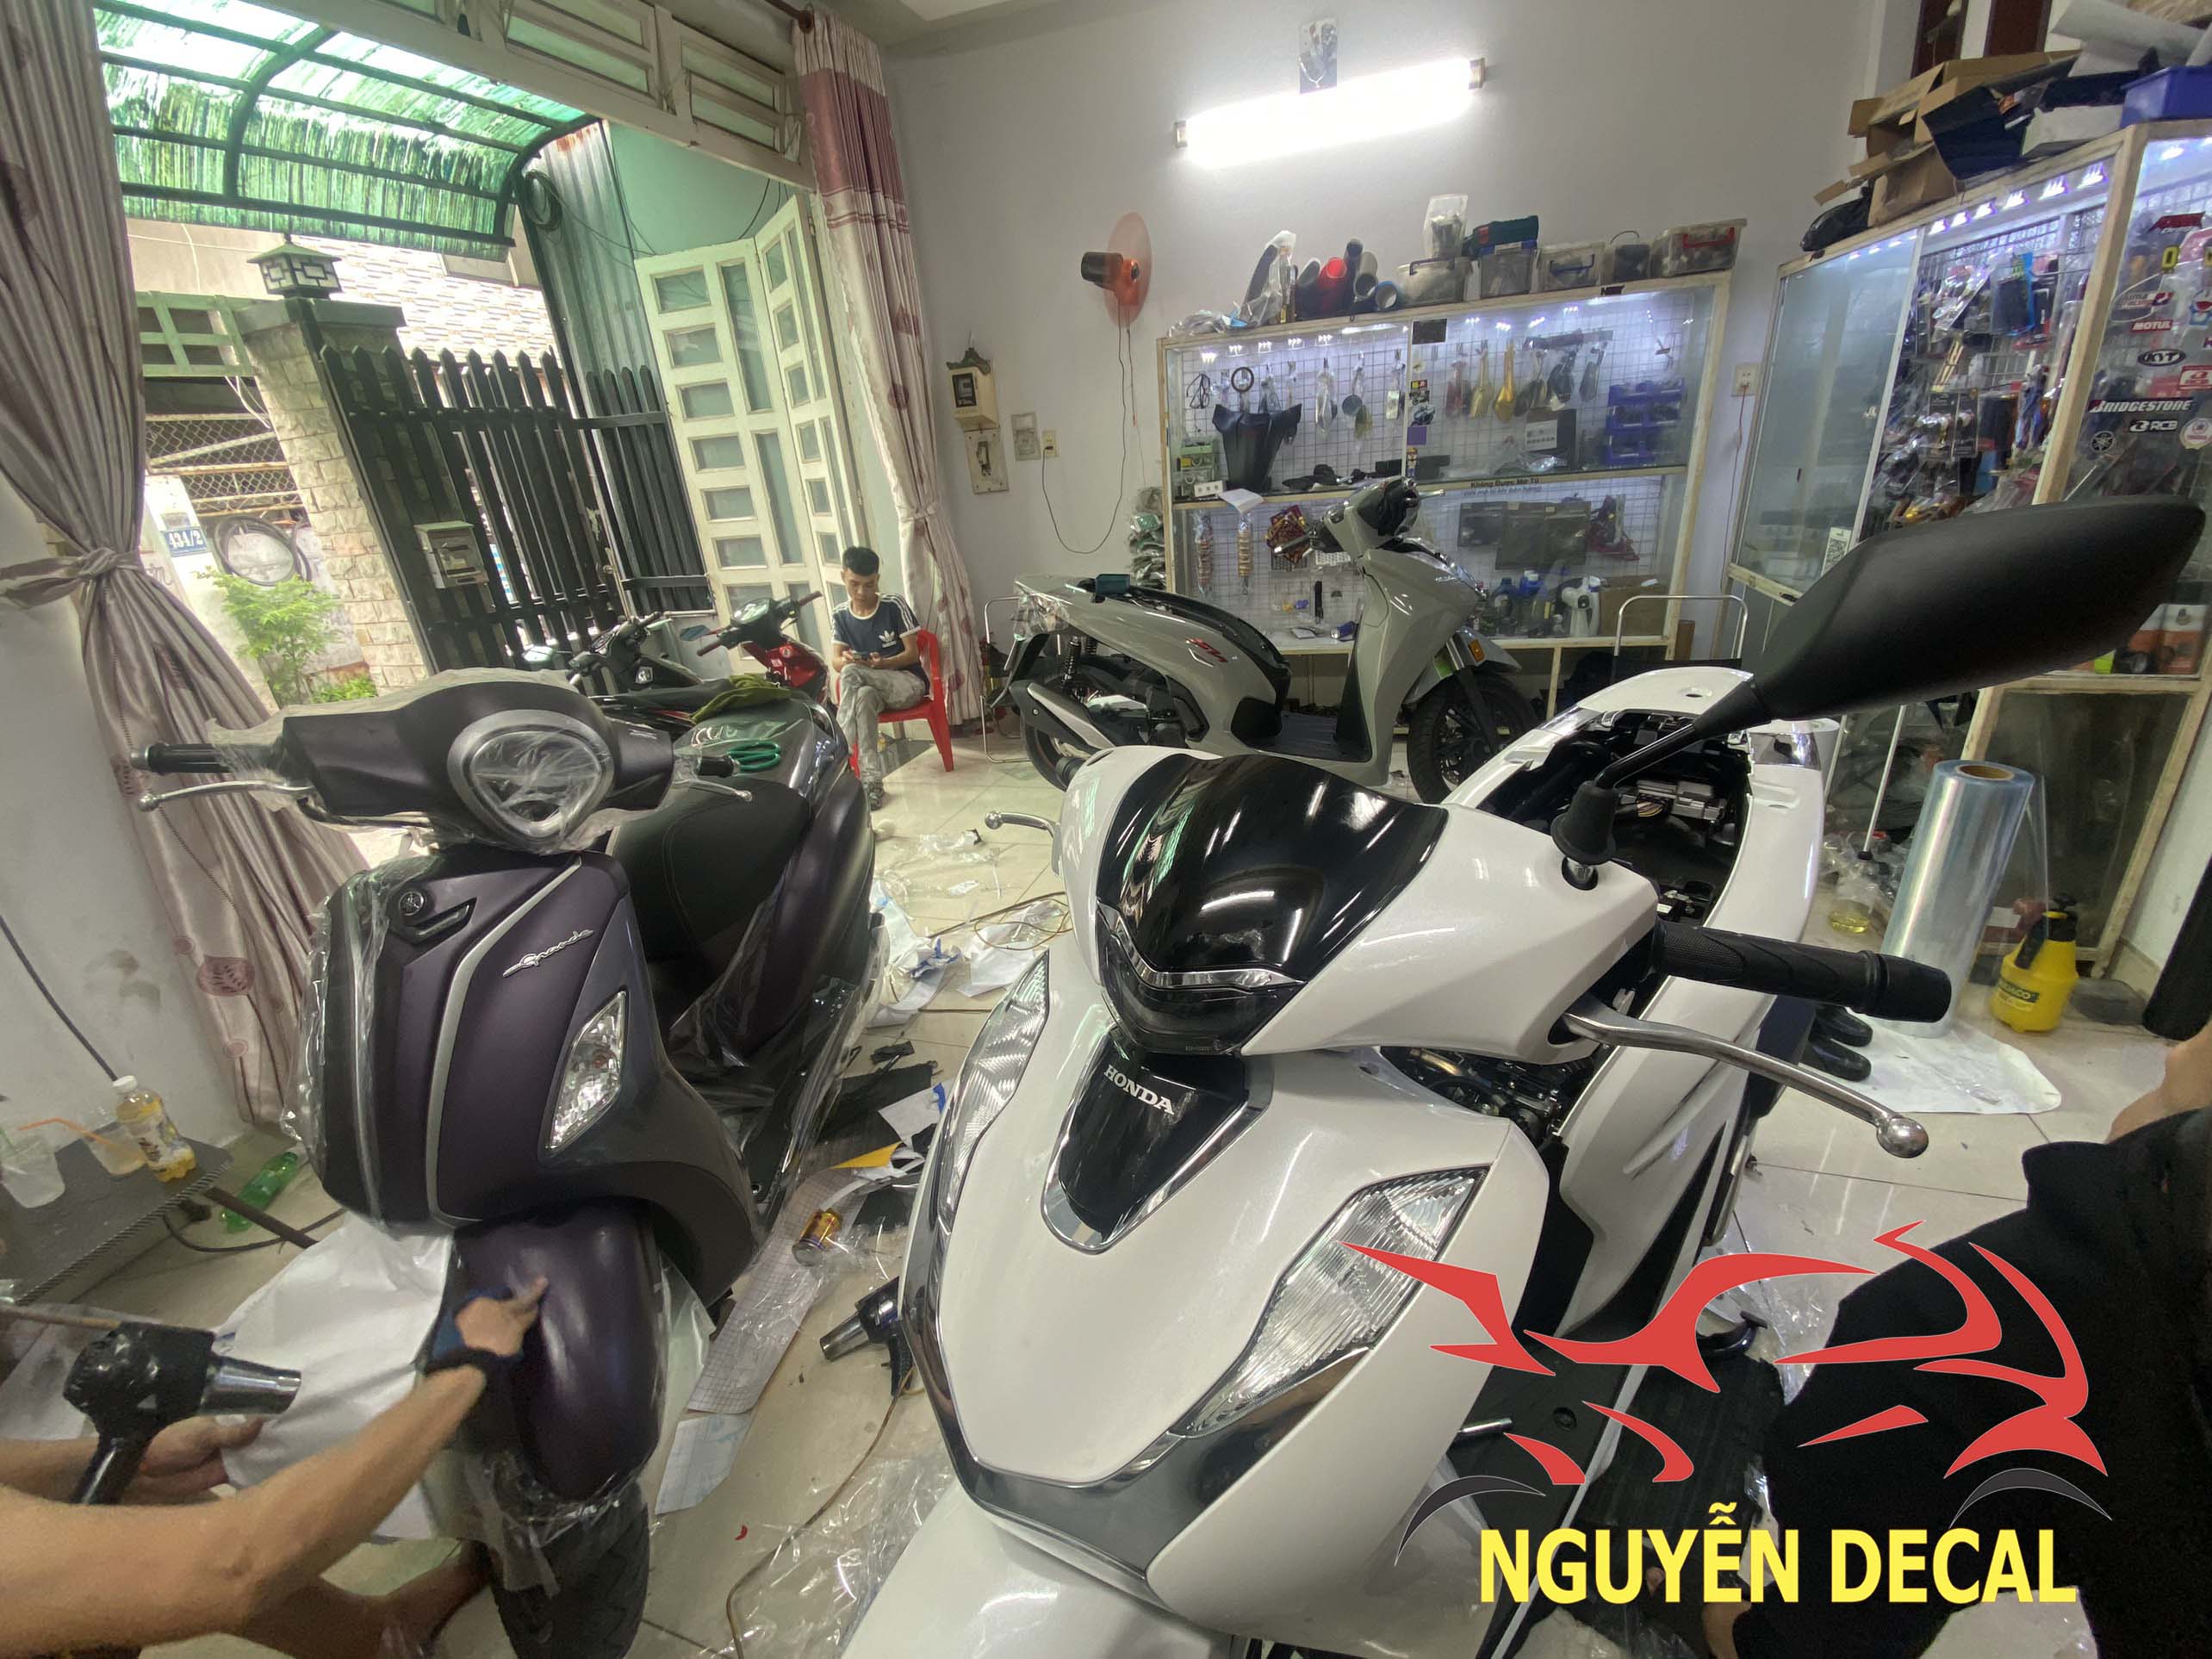 Lắp định vị gps cho xe máy tại Nguyễn Decal